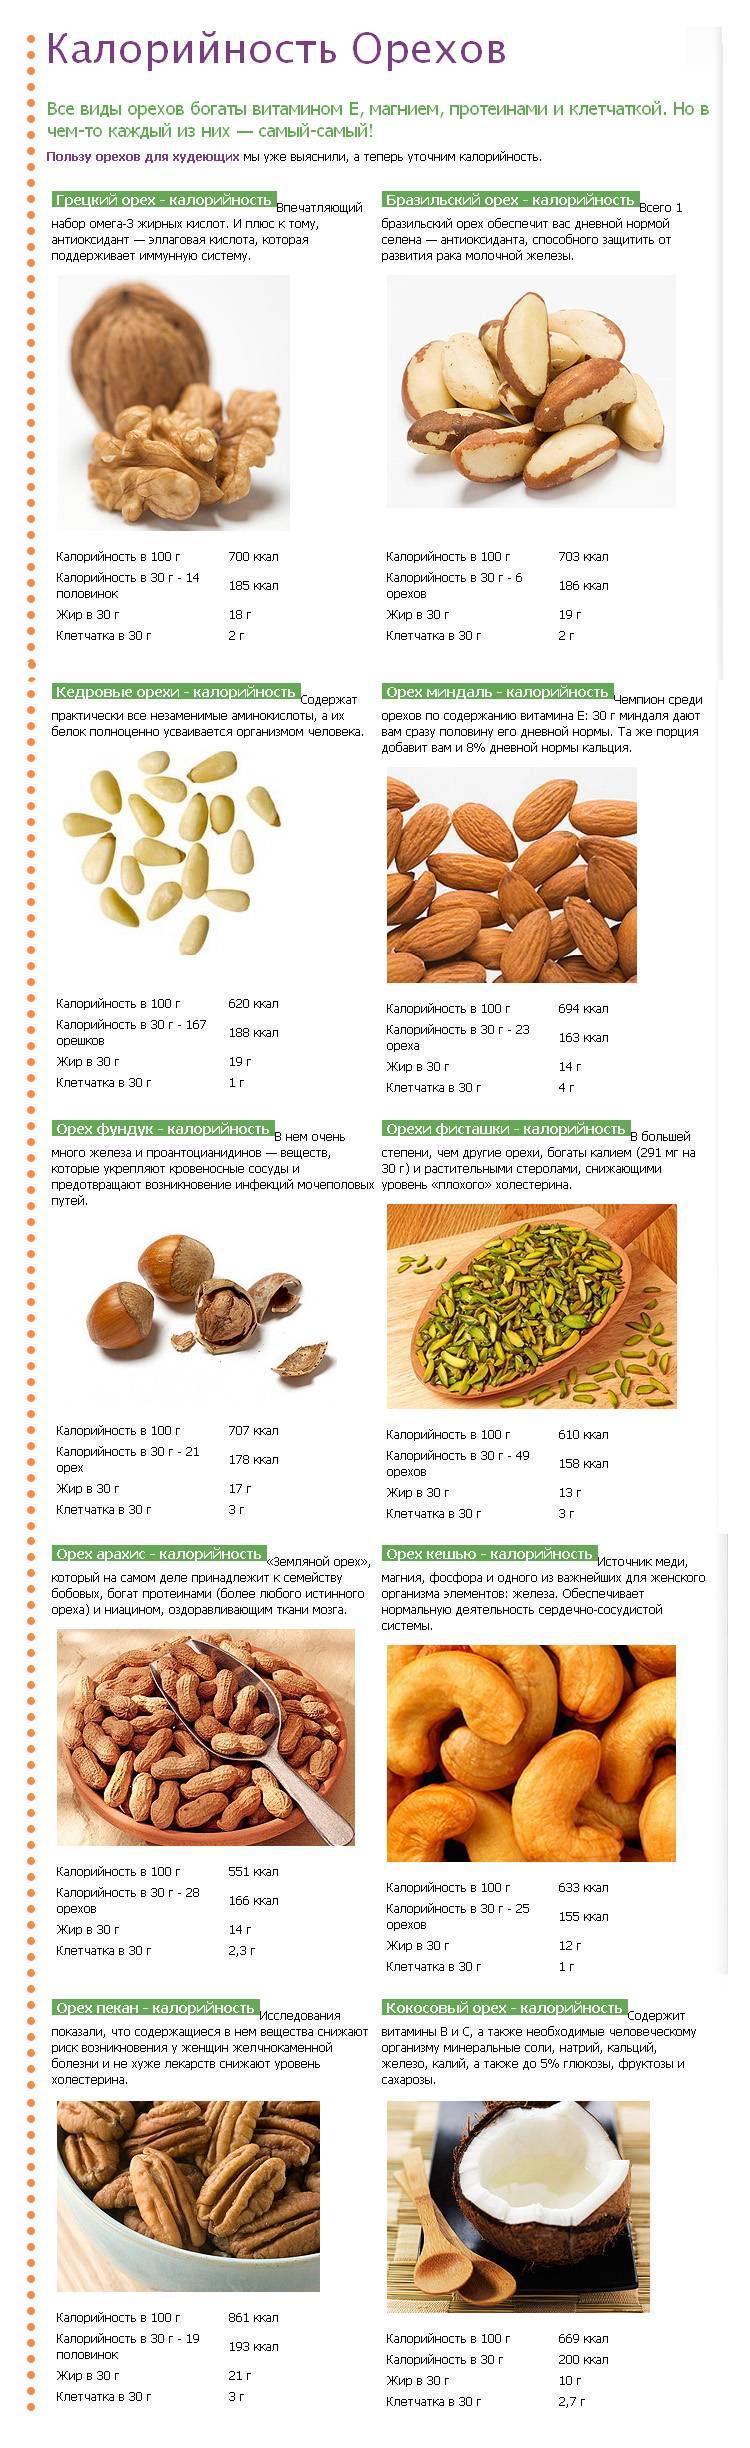 Какие орехи можно есть при похудении и сколько можно съедать в день